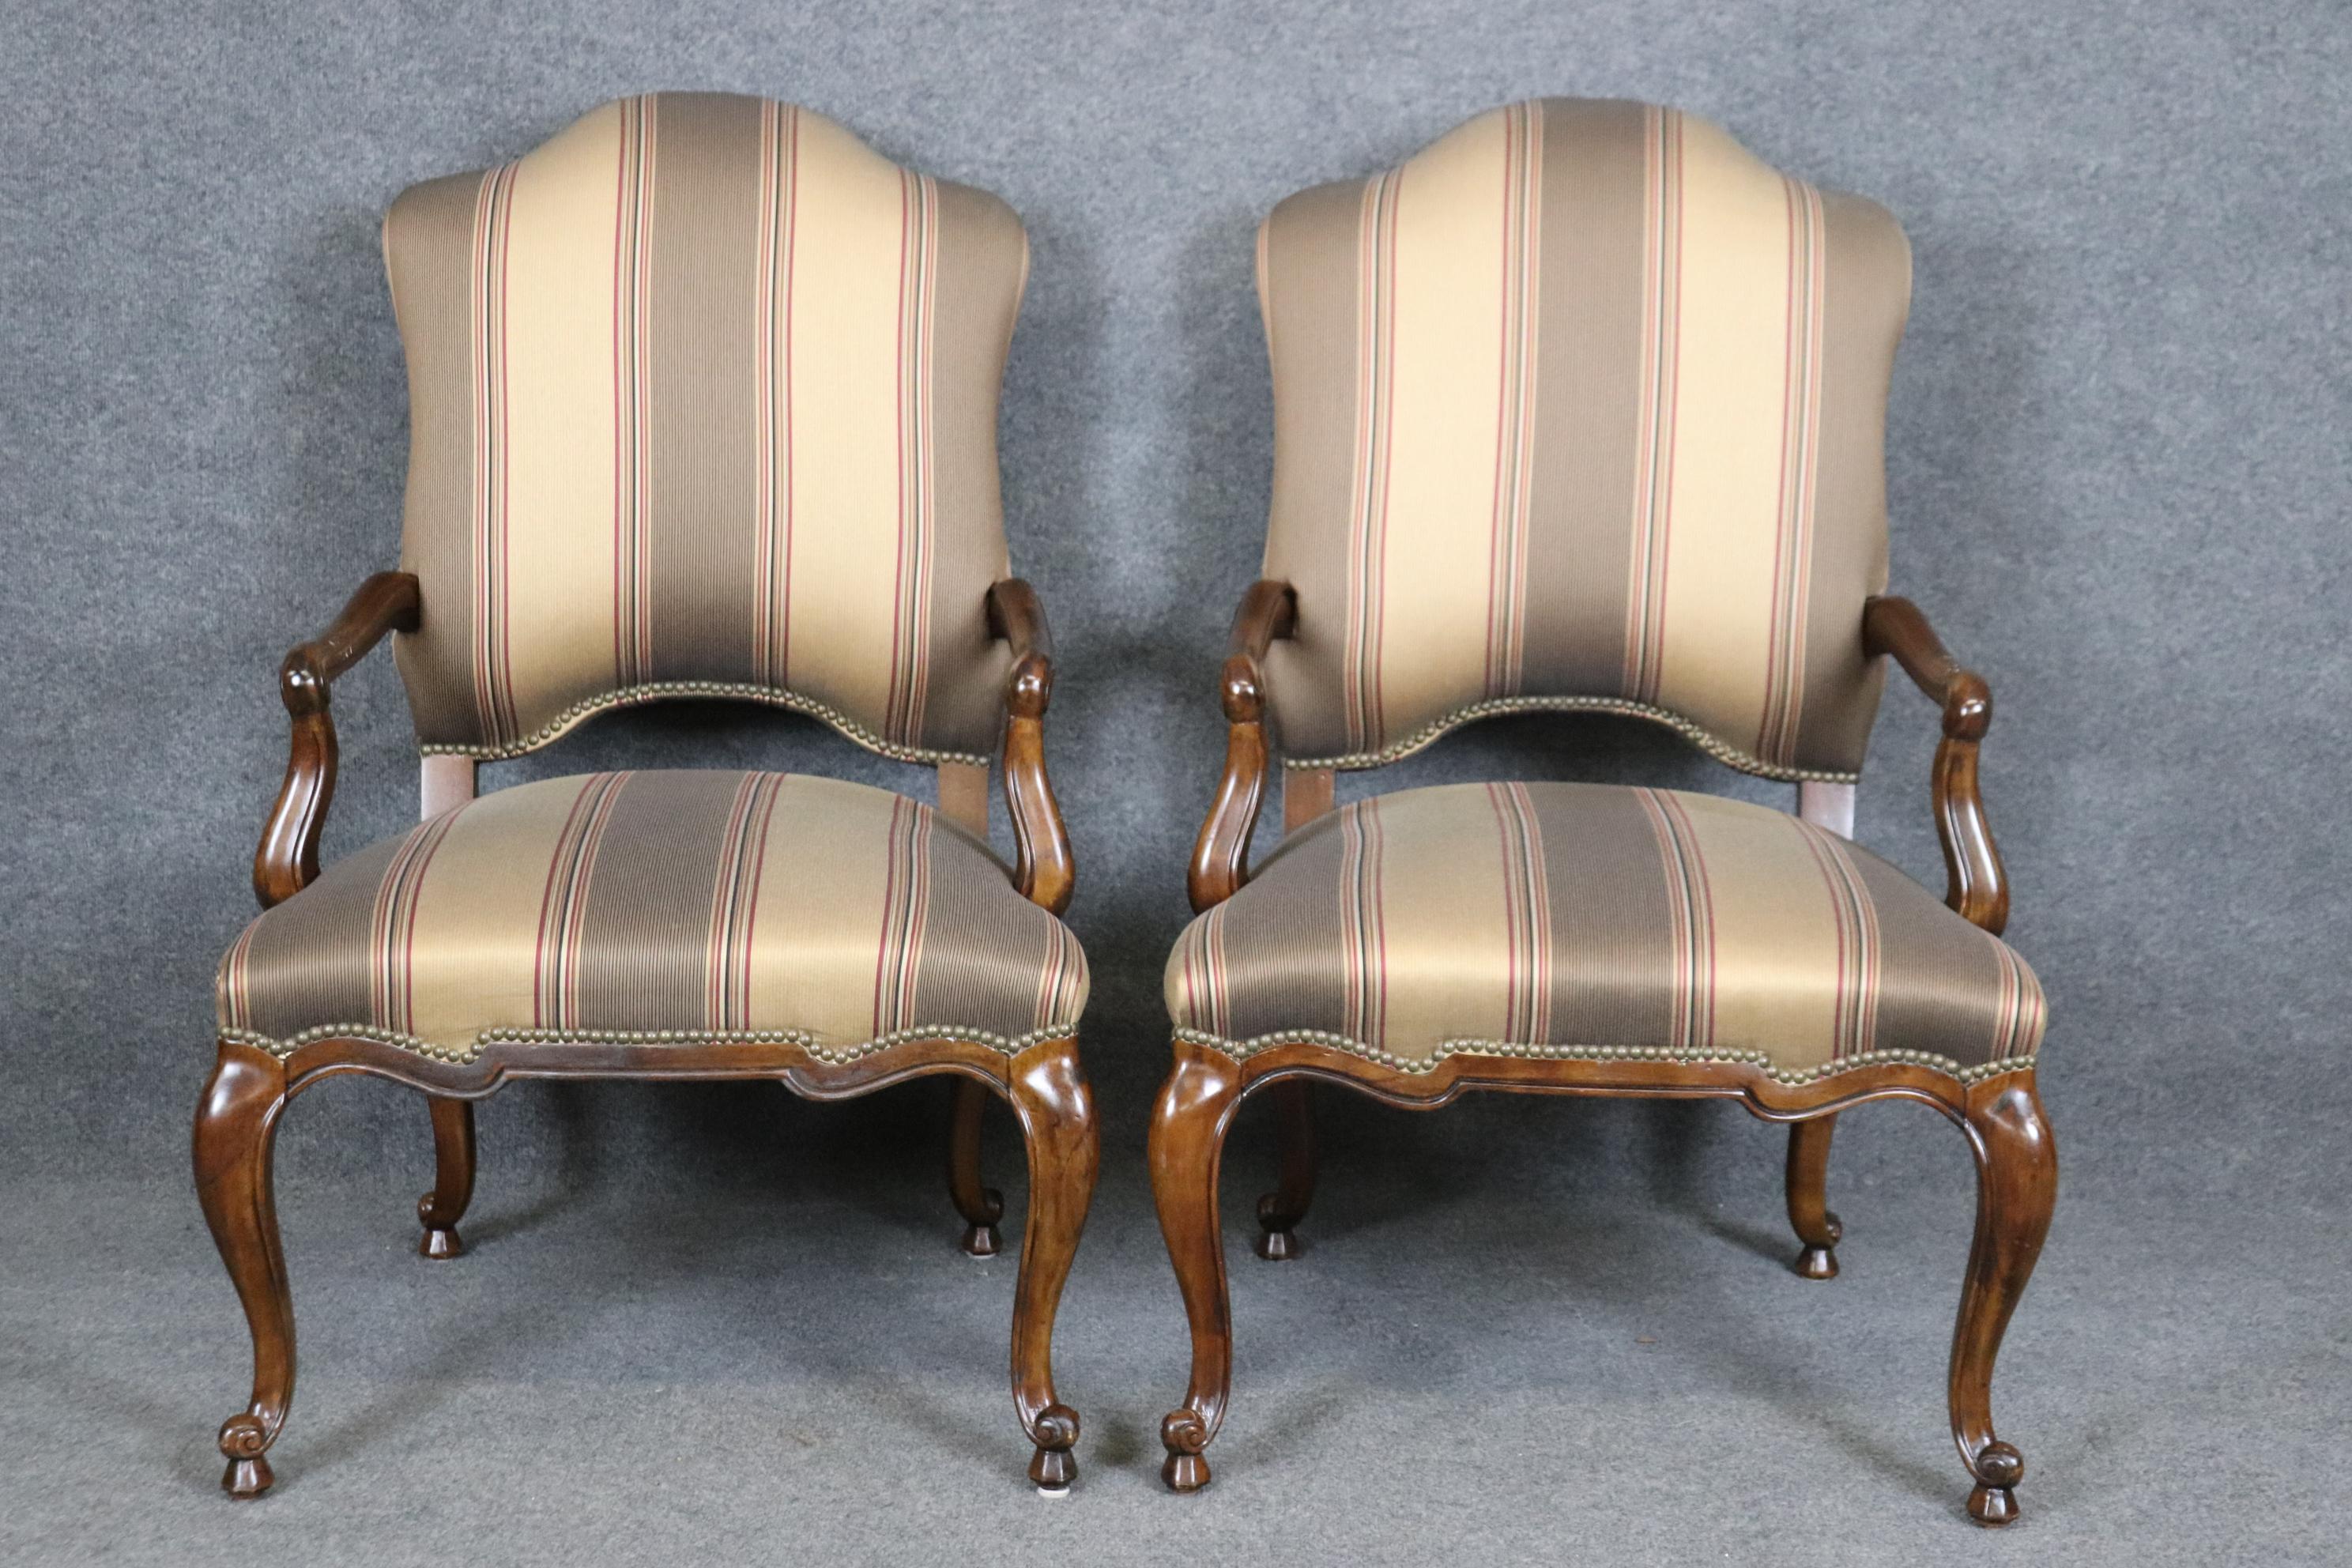 Dies ist ein wunderschönes Paar aus massivem Nussbaum Century Sessel von Century of North Carolina gemacht und sind in gutem Zustand mit minimalen Verschleiß und Gebrauchsspuren. Die Stühle sind schön gepolstert. Maße 44,5 hoch x 27,5 breit x 30,25